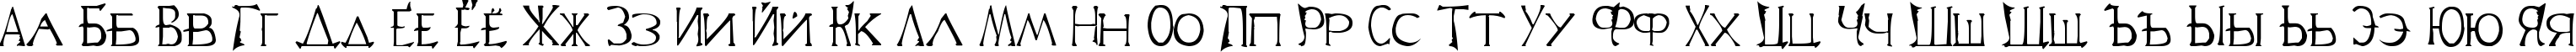 Пример написания русского алфавита шрифтом Lineage 2 Font